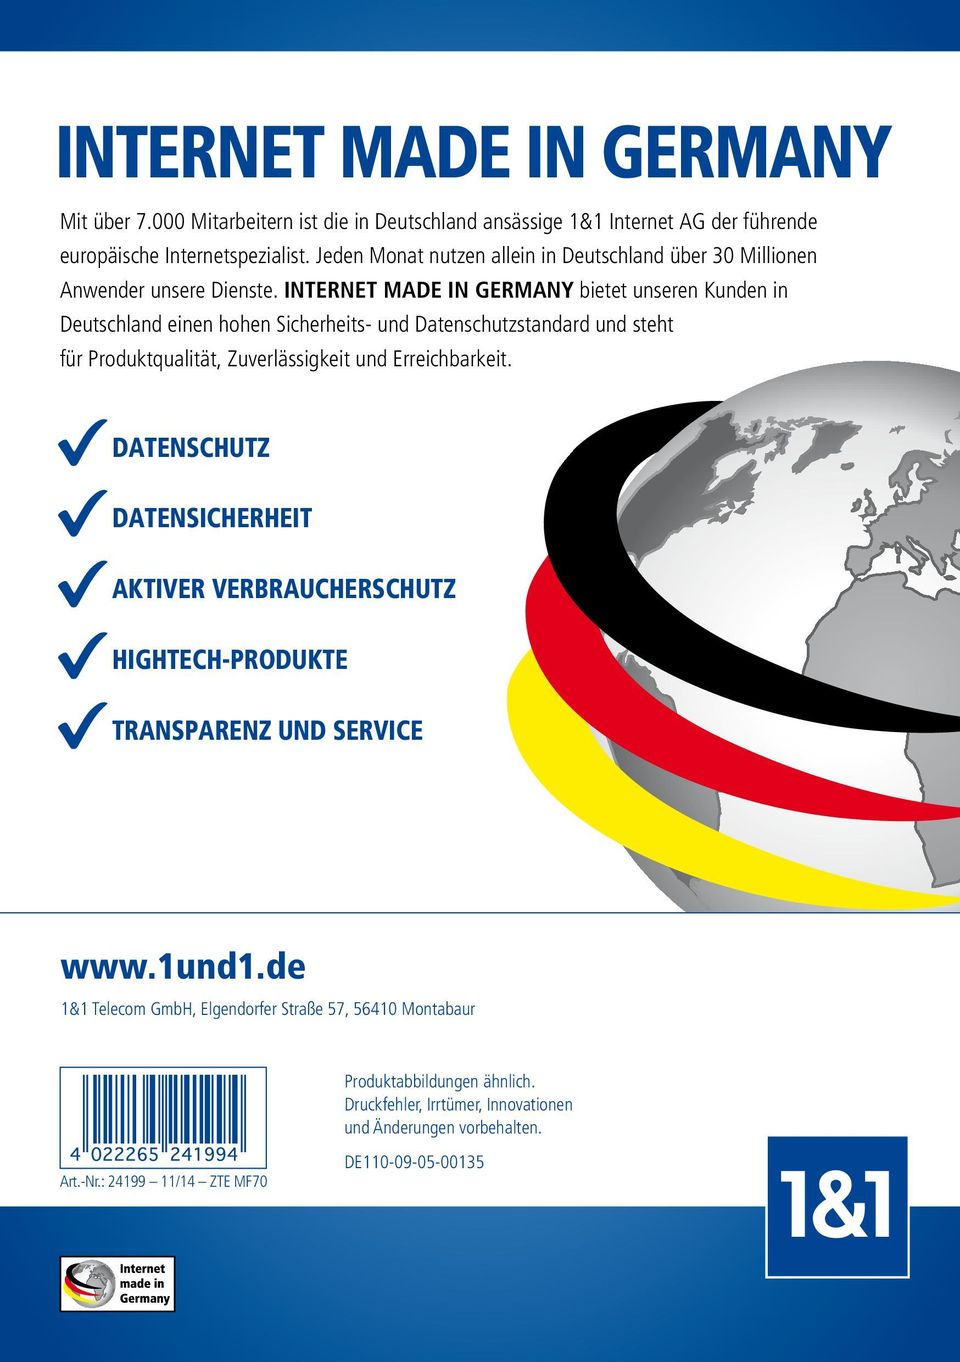 INTERNET MADE IN GERMANY bietet unseren Kunden in Deutschland einen hohen Sicherheits- und Datenschutzstandard und steht für Produktqualität, Zuverlässigkeit und